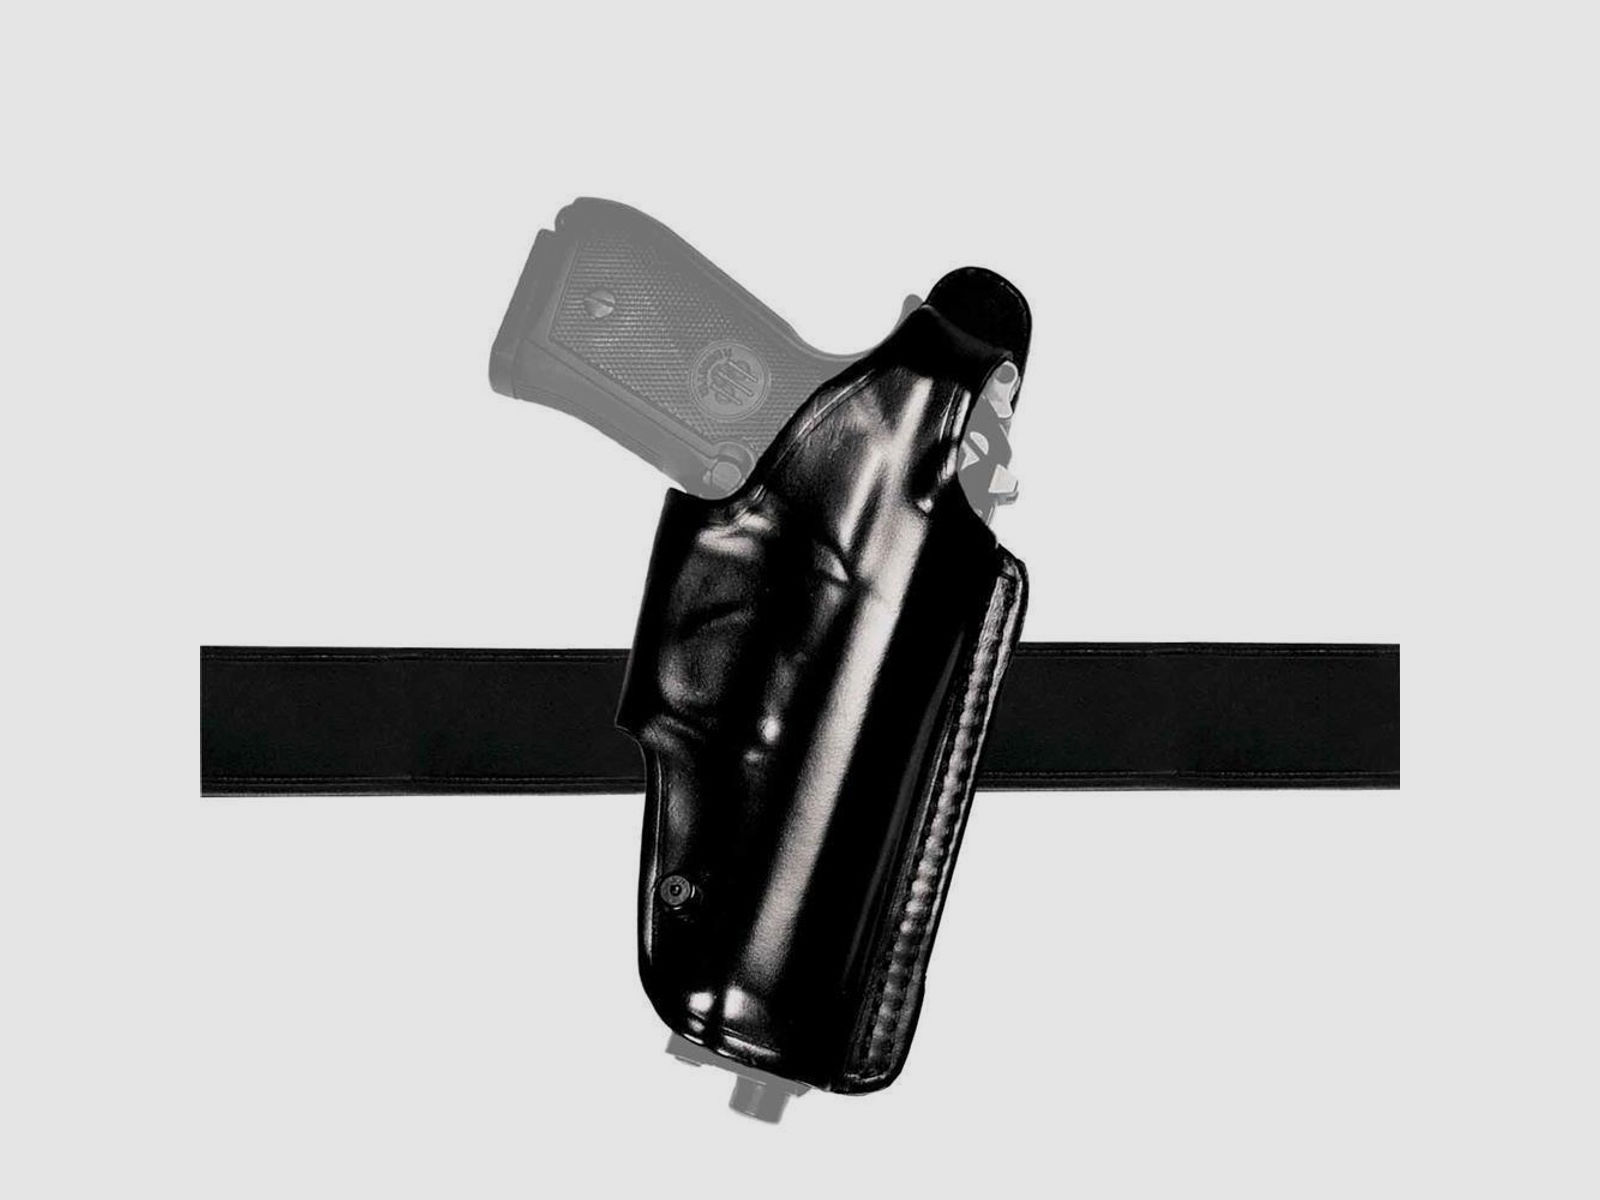 Mehrzweck-Schulterholster/Gürtelholster "Miami 2" Glock 42 Braun Rechtshänder